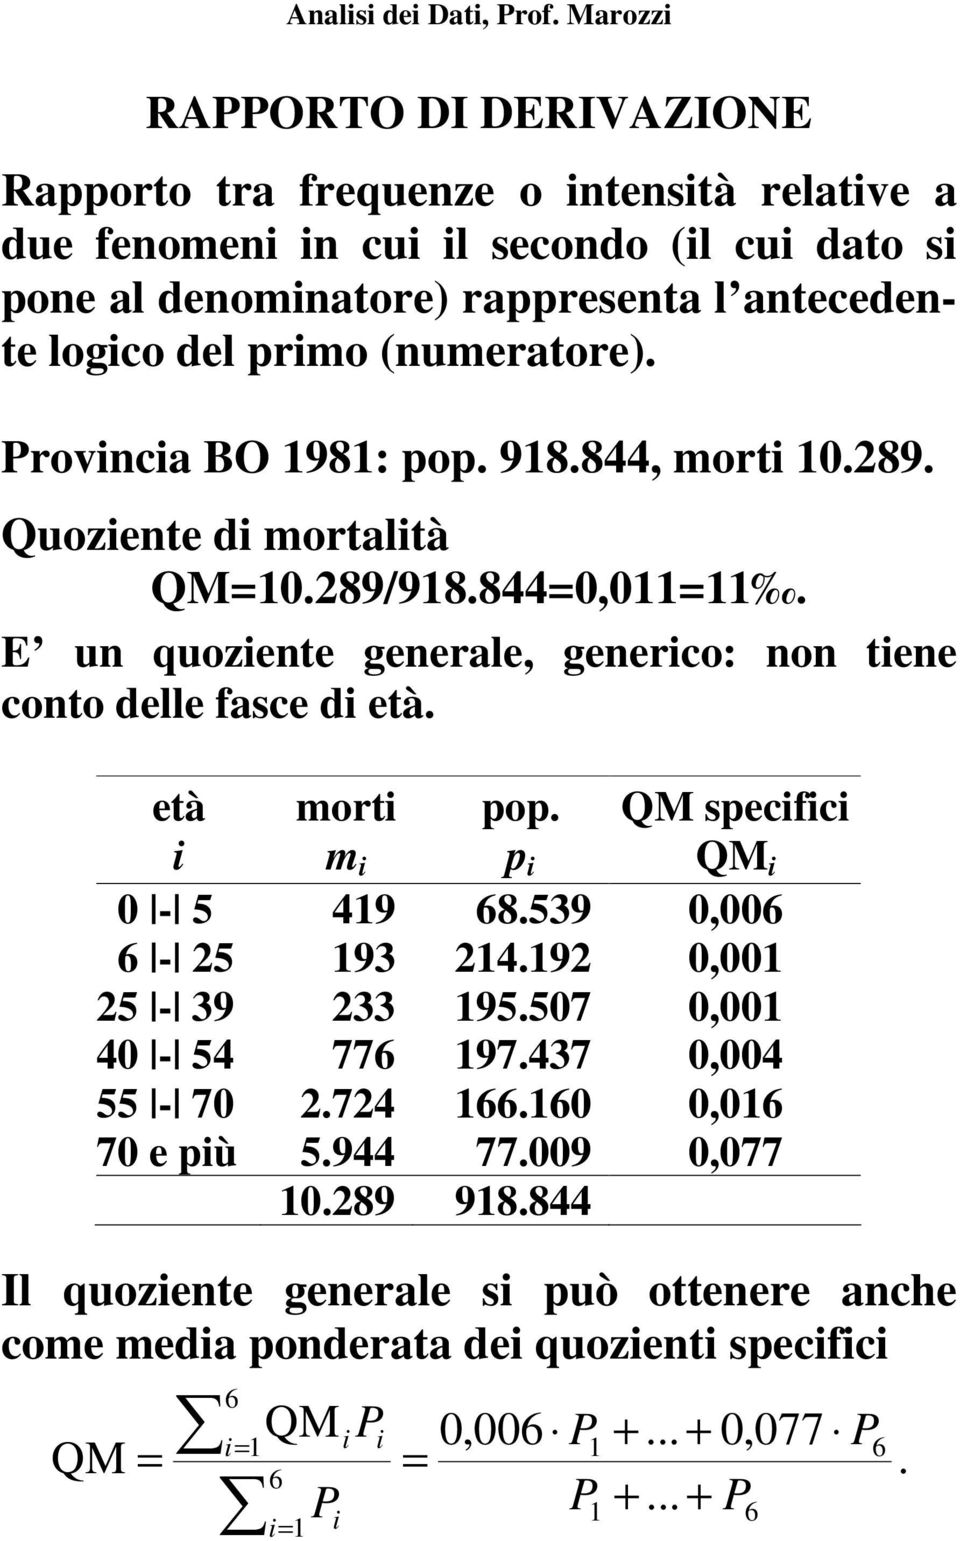 E un quoziente generale, generico: non tiene conto delle fasce di età. età i morti m i pop. p i QM specifici QM i 0-5 419 68.539 0,006 6-25 193 214.192 0,001 25-39 233 195.